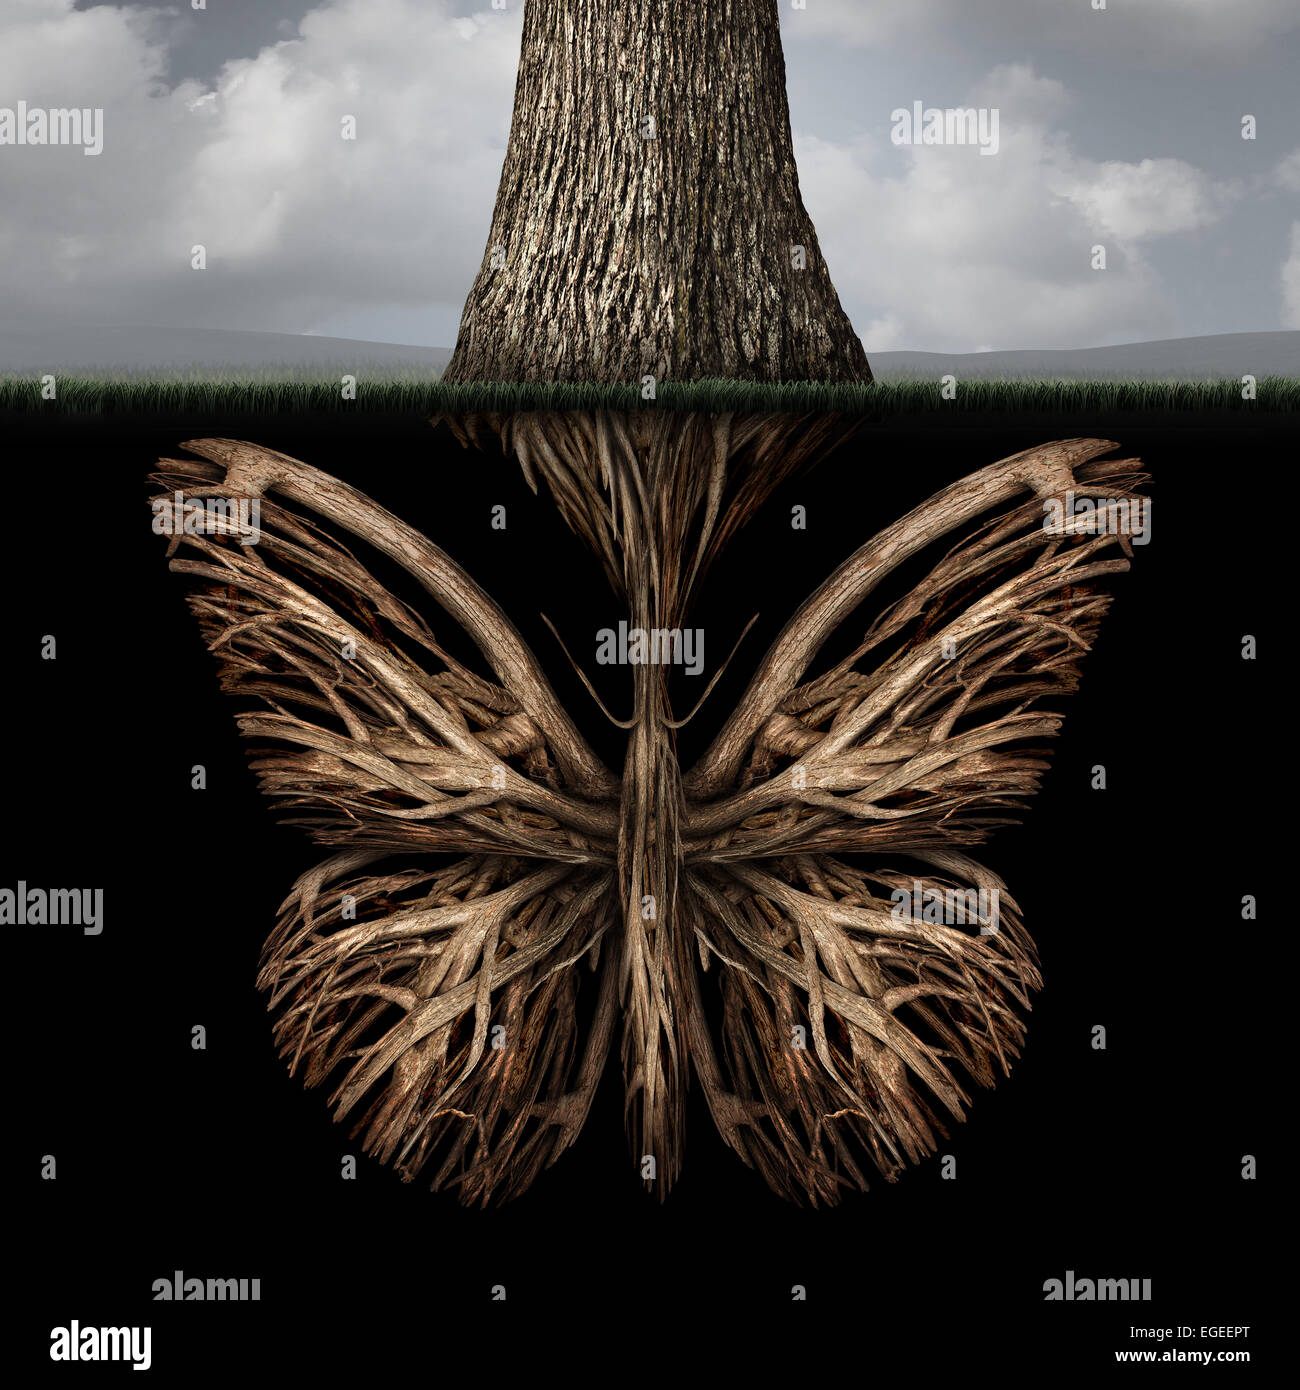 Fondements créatifs concept comme un arbre avec une racine en forme de papillon comme une puissante métaphore de l'environnement ou le symbole de pensées intérieures et une forte créativité foundation. Banque D'Images